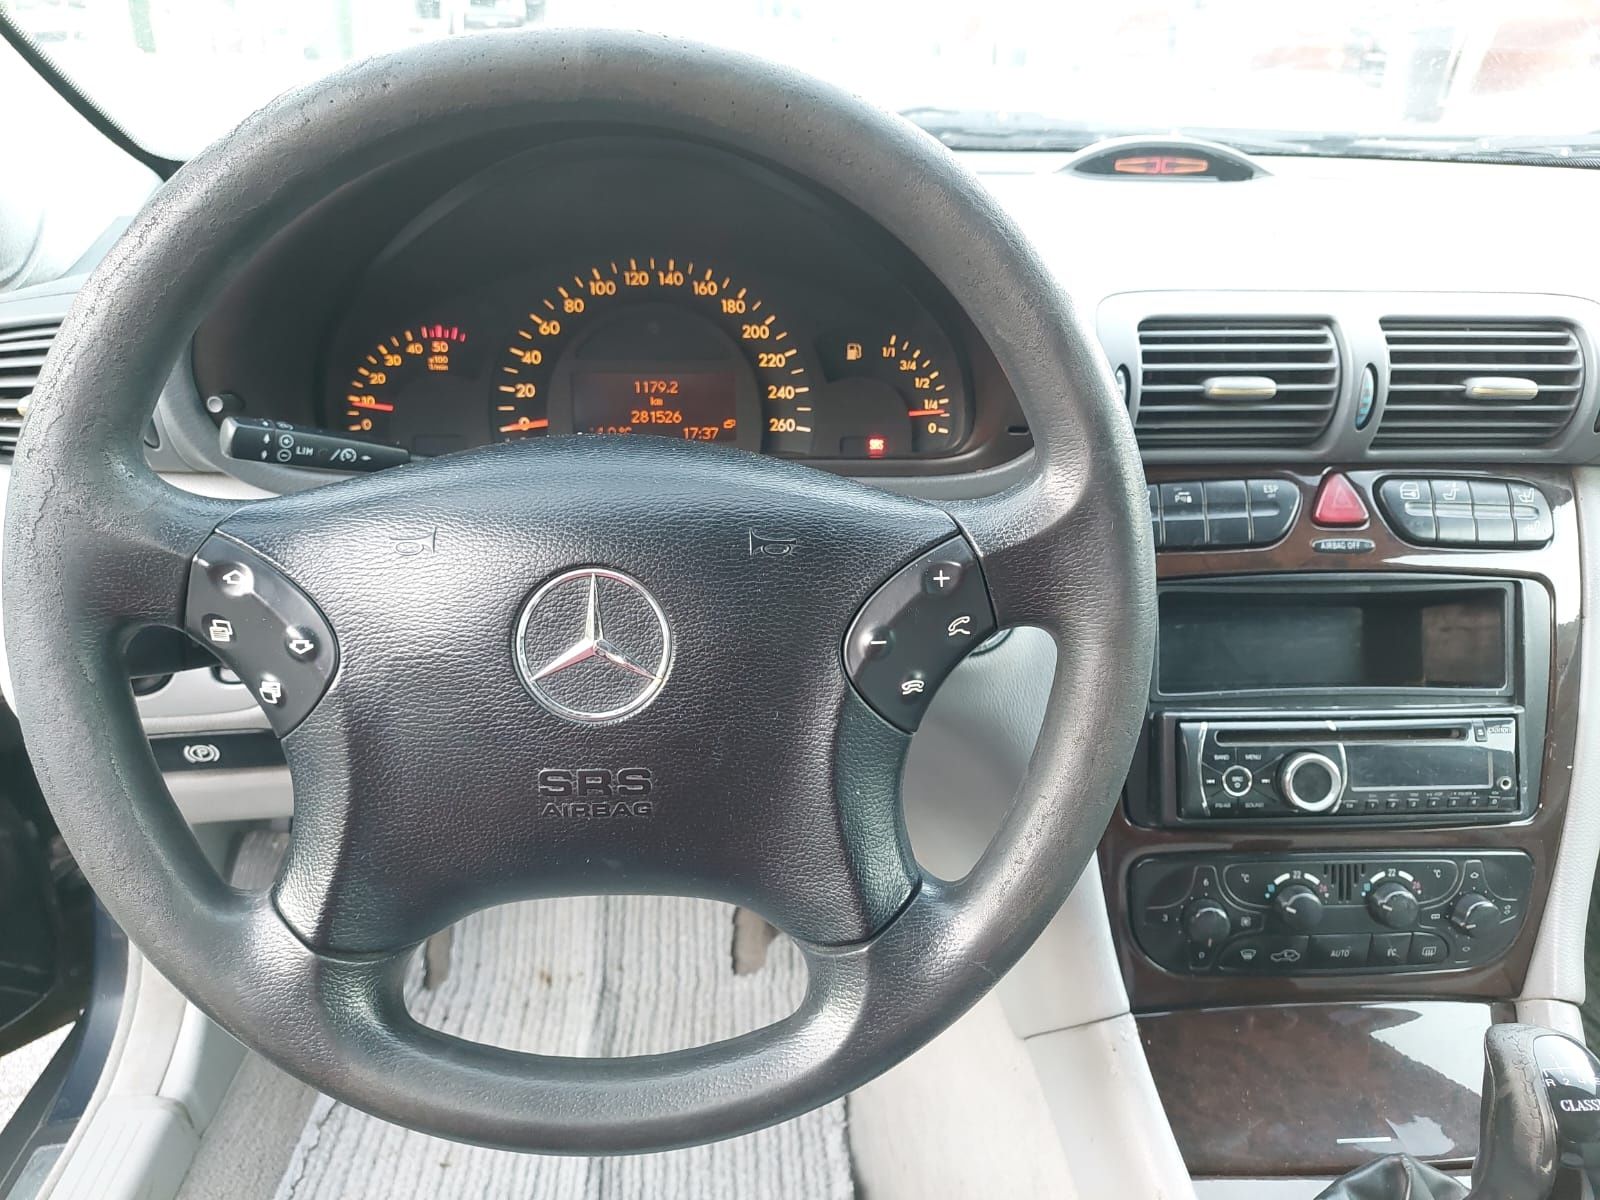 Mercedes C200, an 2002